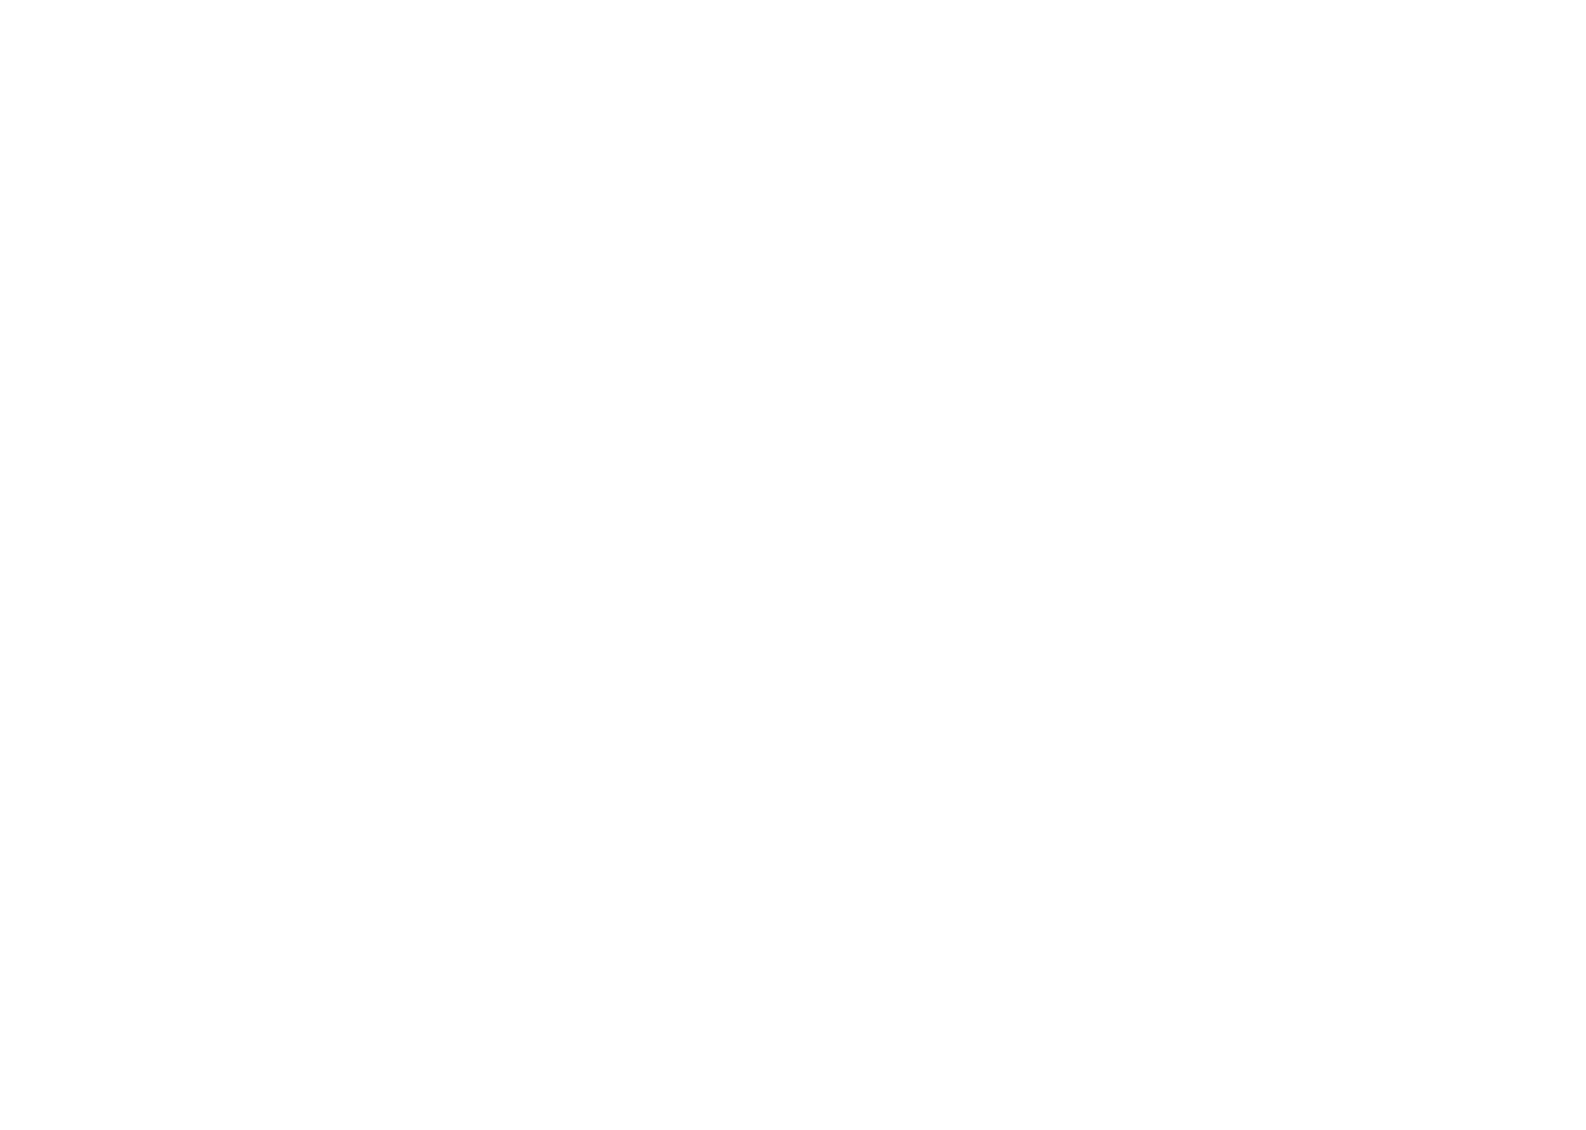 Westlake Chemical Partners logo for dark backgrounds (transparent PNG)